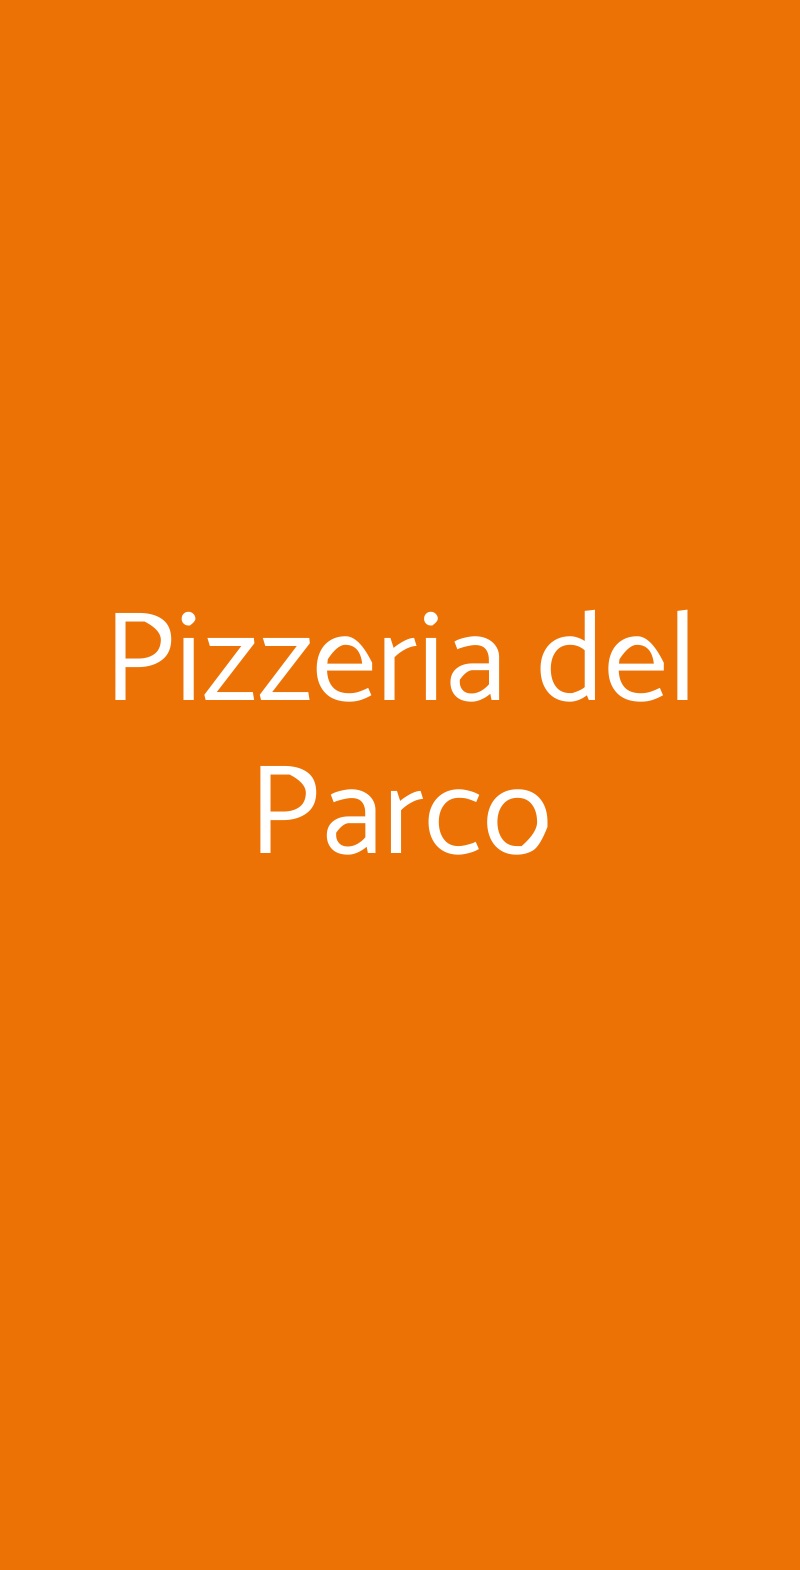 Pizzeria del Parco Milano menù 1 pagina